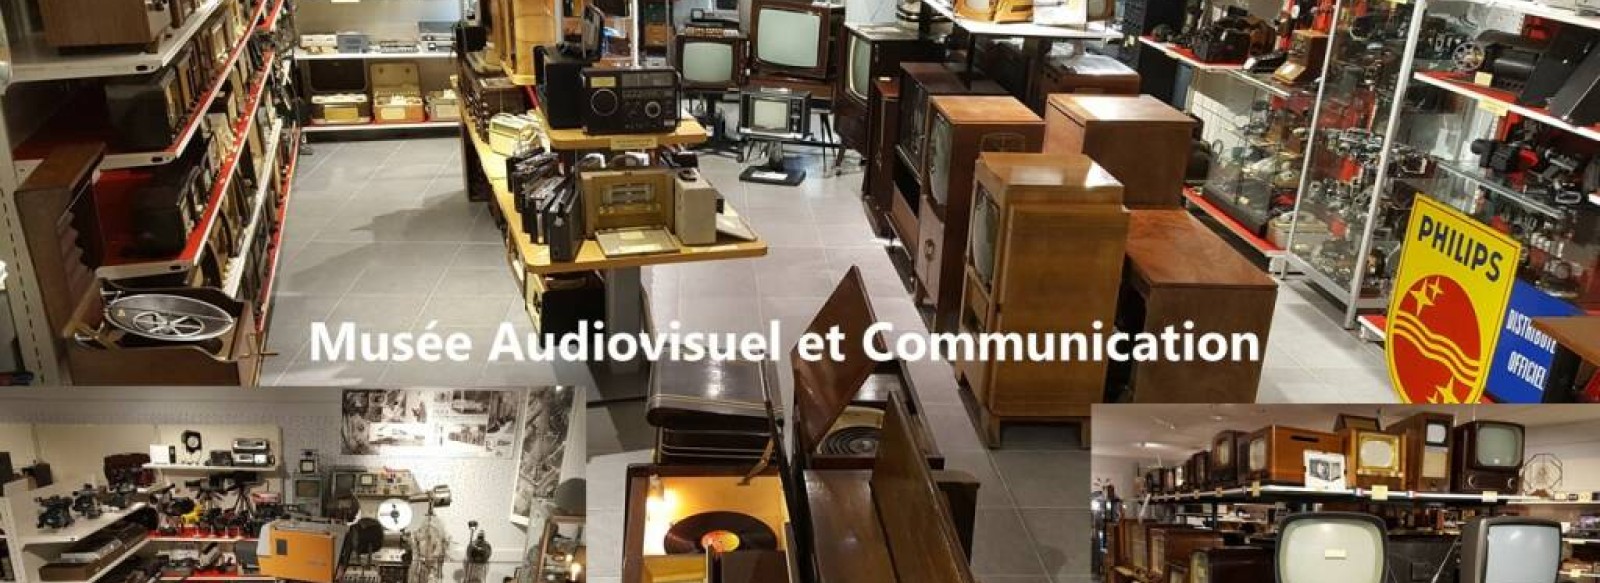 MUSEE DE L'AUDIOVISUEL ET DE LA COMMUNICATION